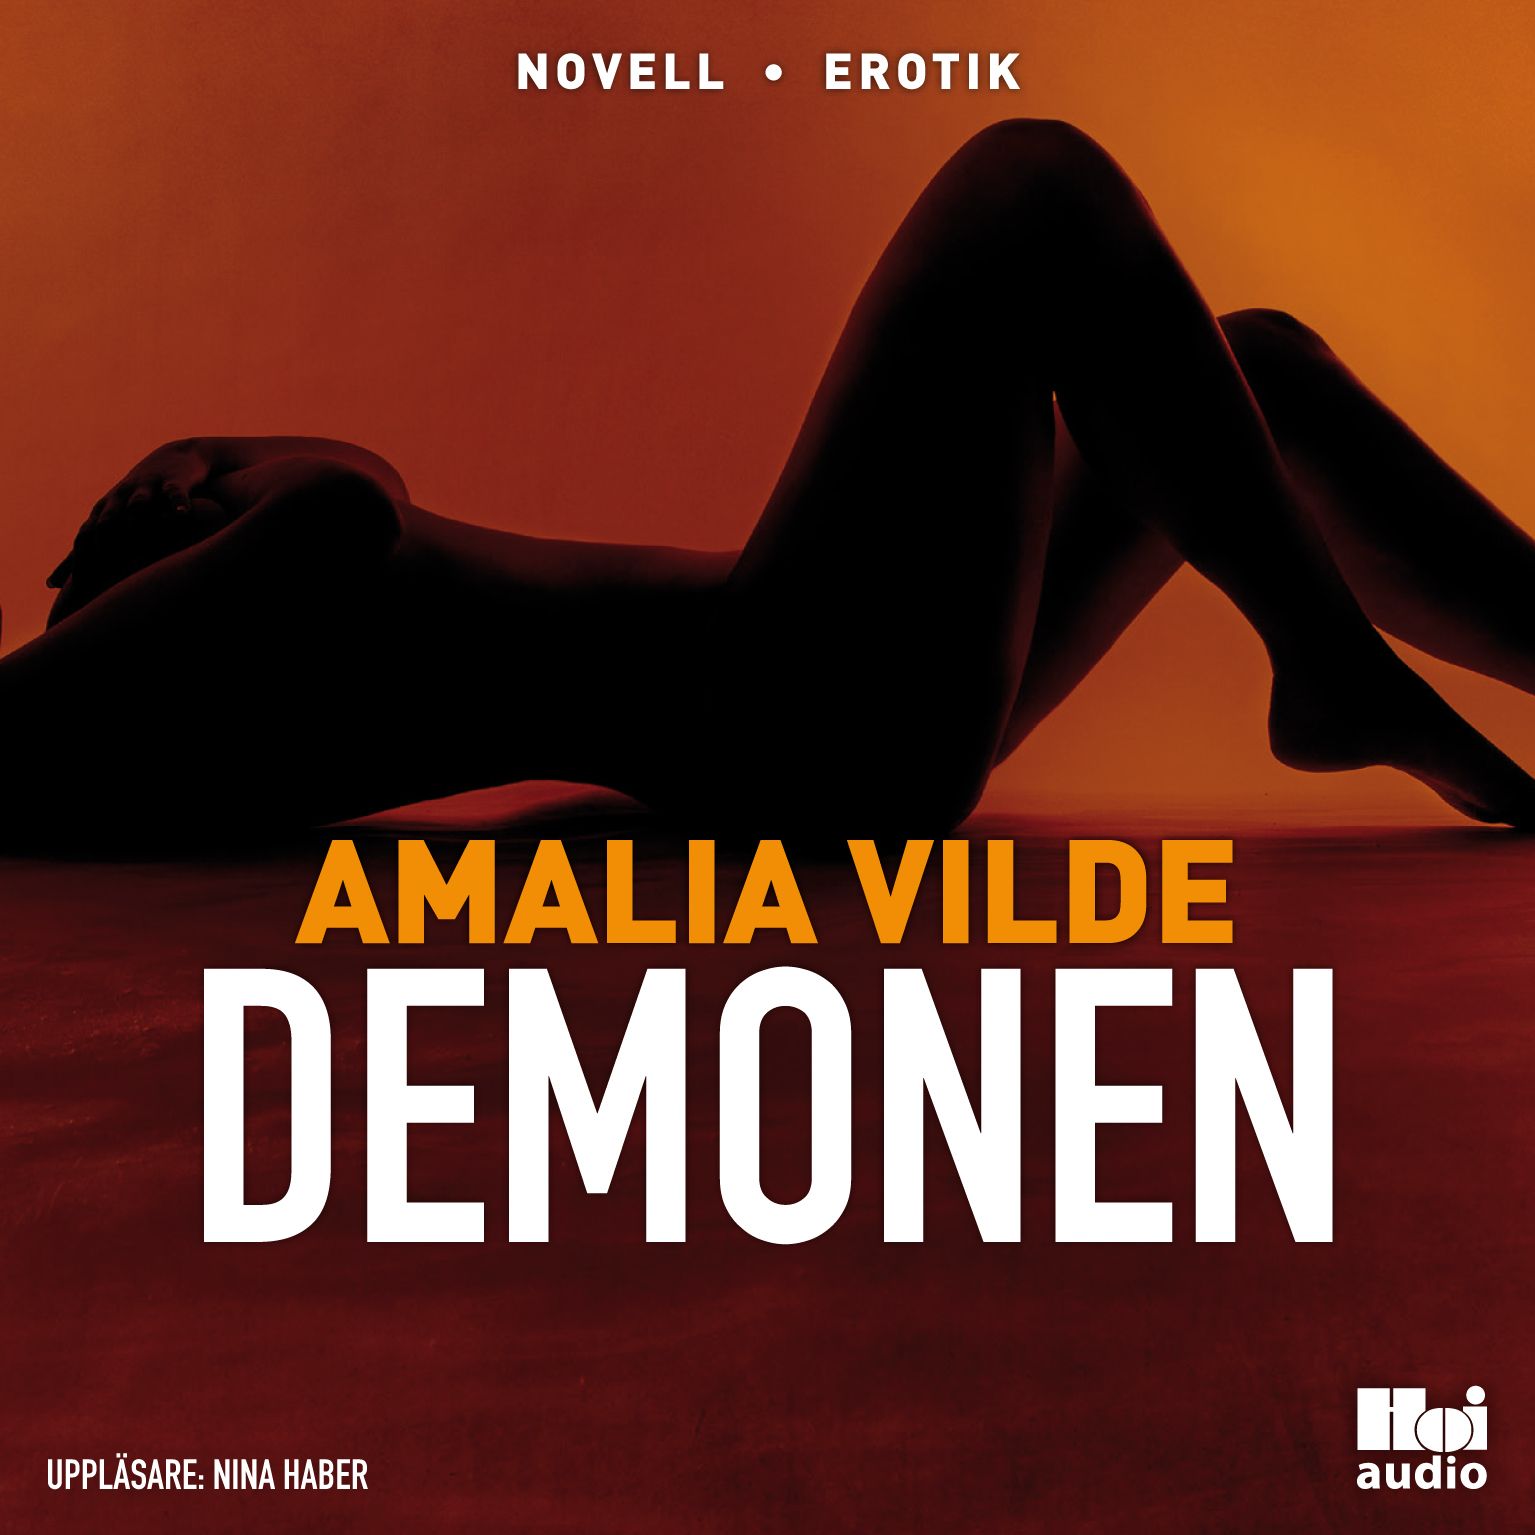 Demonen, ljudbok av Amalia Vilde